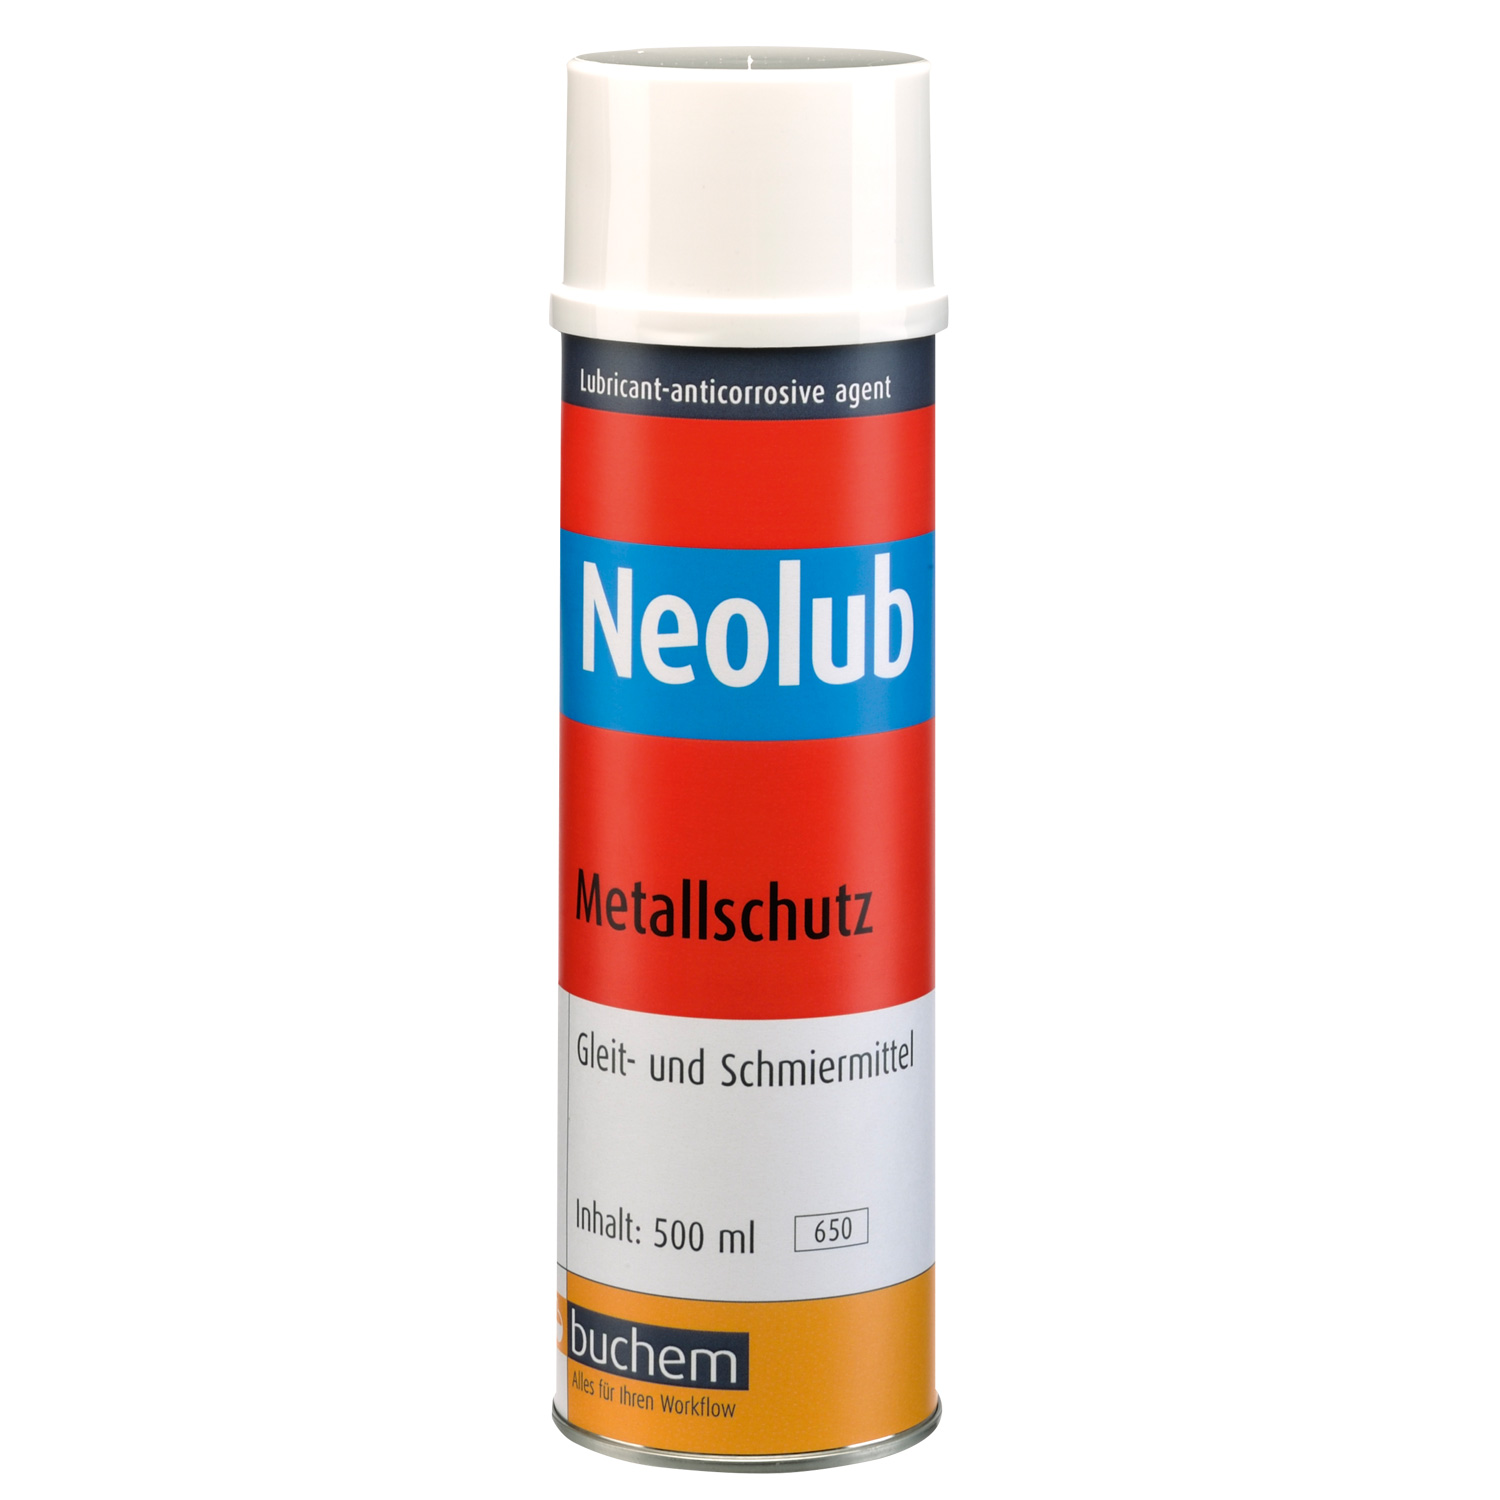 Buchem Neolub